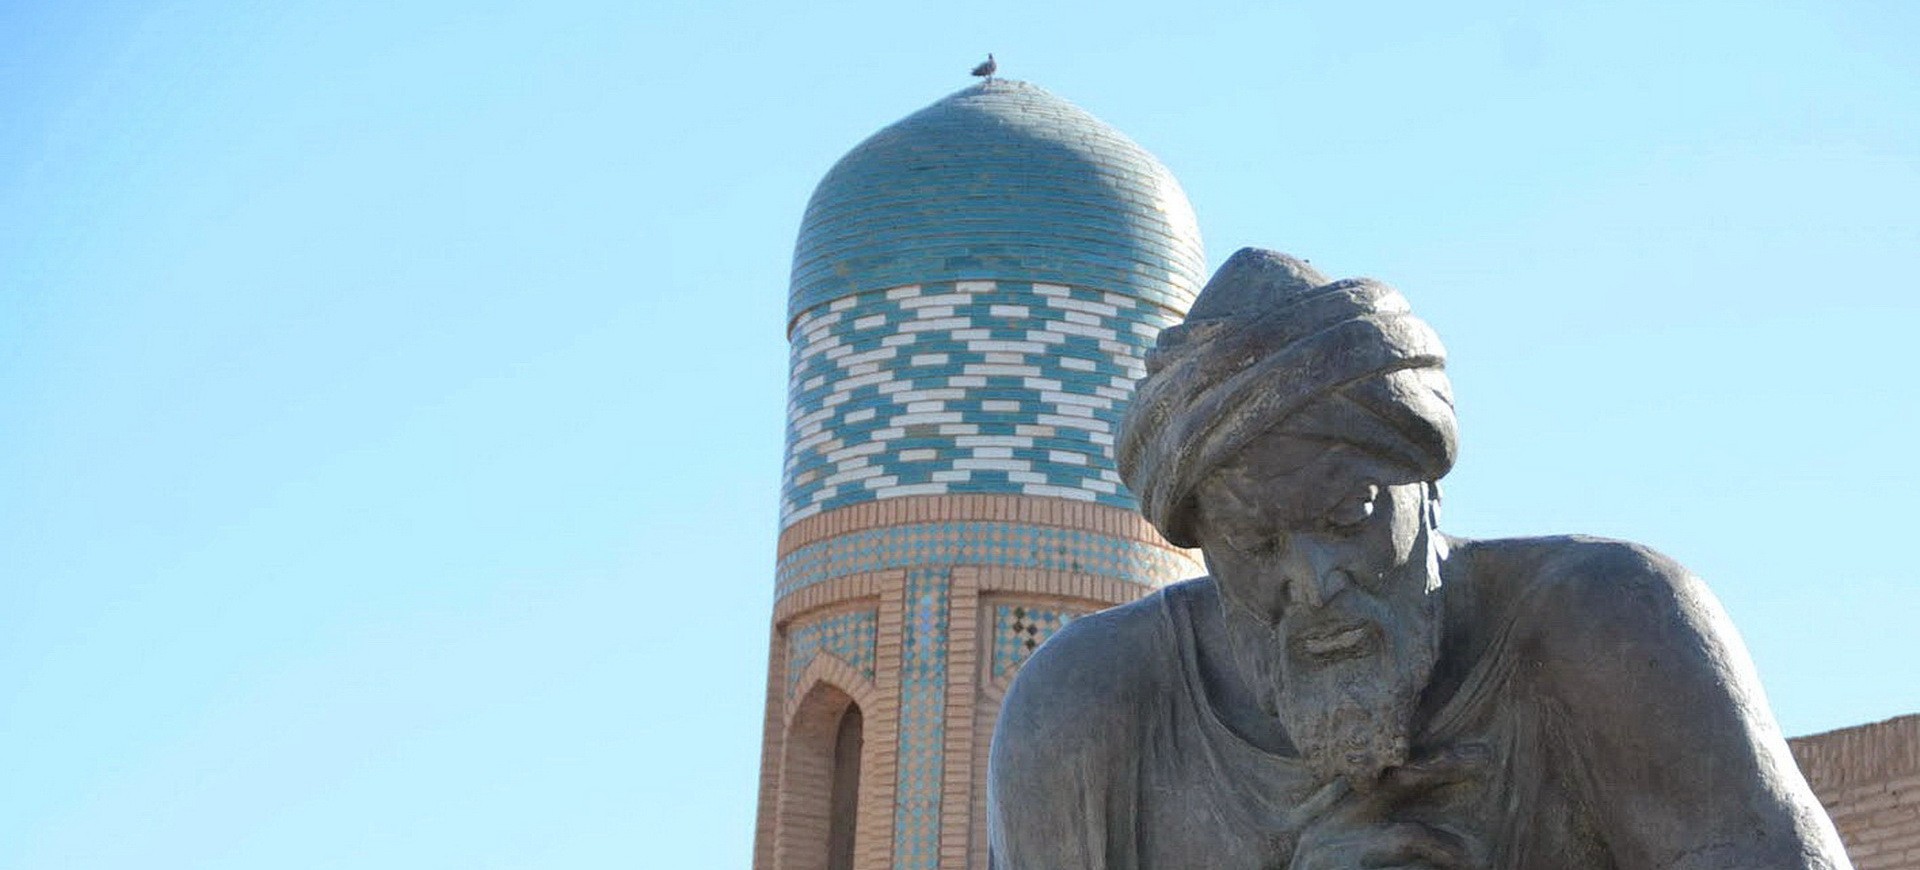 Ouzbékistan Khiva